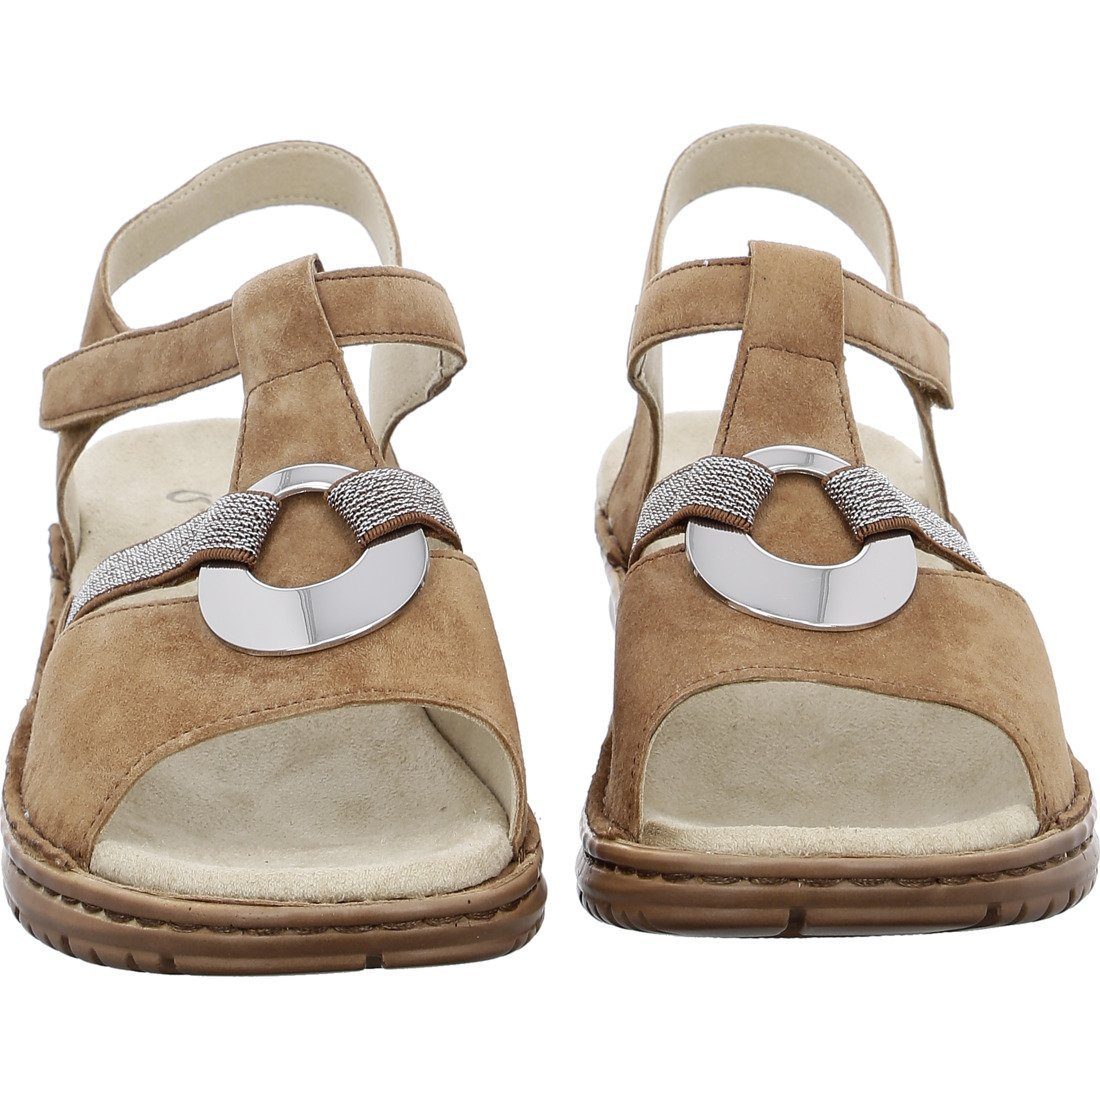 Ara Ara Schuhe, Sandalette Hawaii Leder - Damen 045319 Sandalette rot